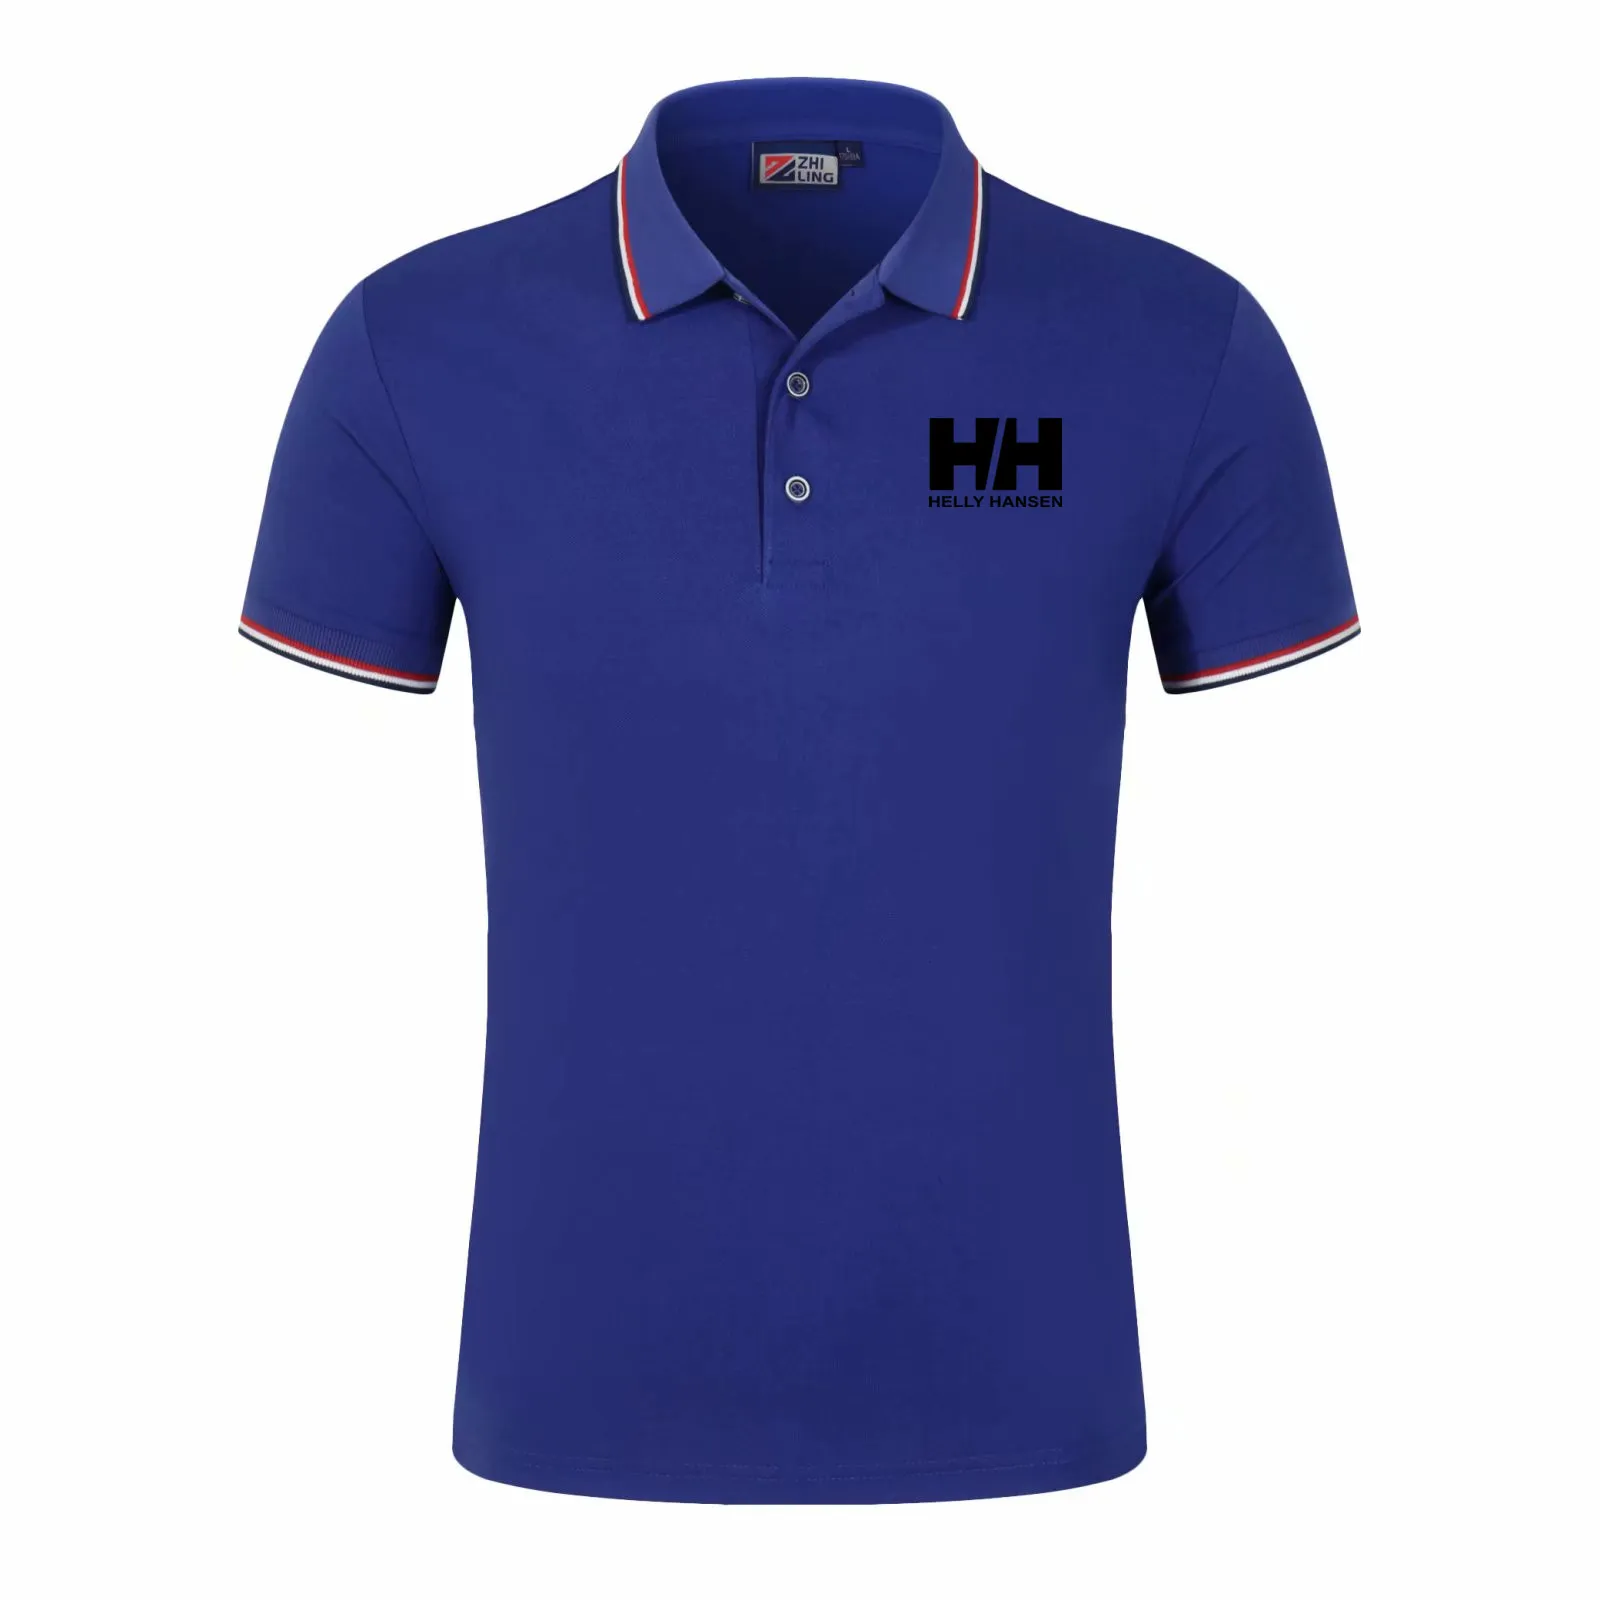 Ontwerper Nieuwe Stijl Mens Polo Shirt Top Borduurwerk Mannen Korte Mouw Katoenen Shirt Jerseys Polos Shirt Hot Sales Mannen Kleding